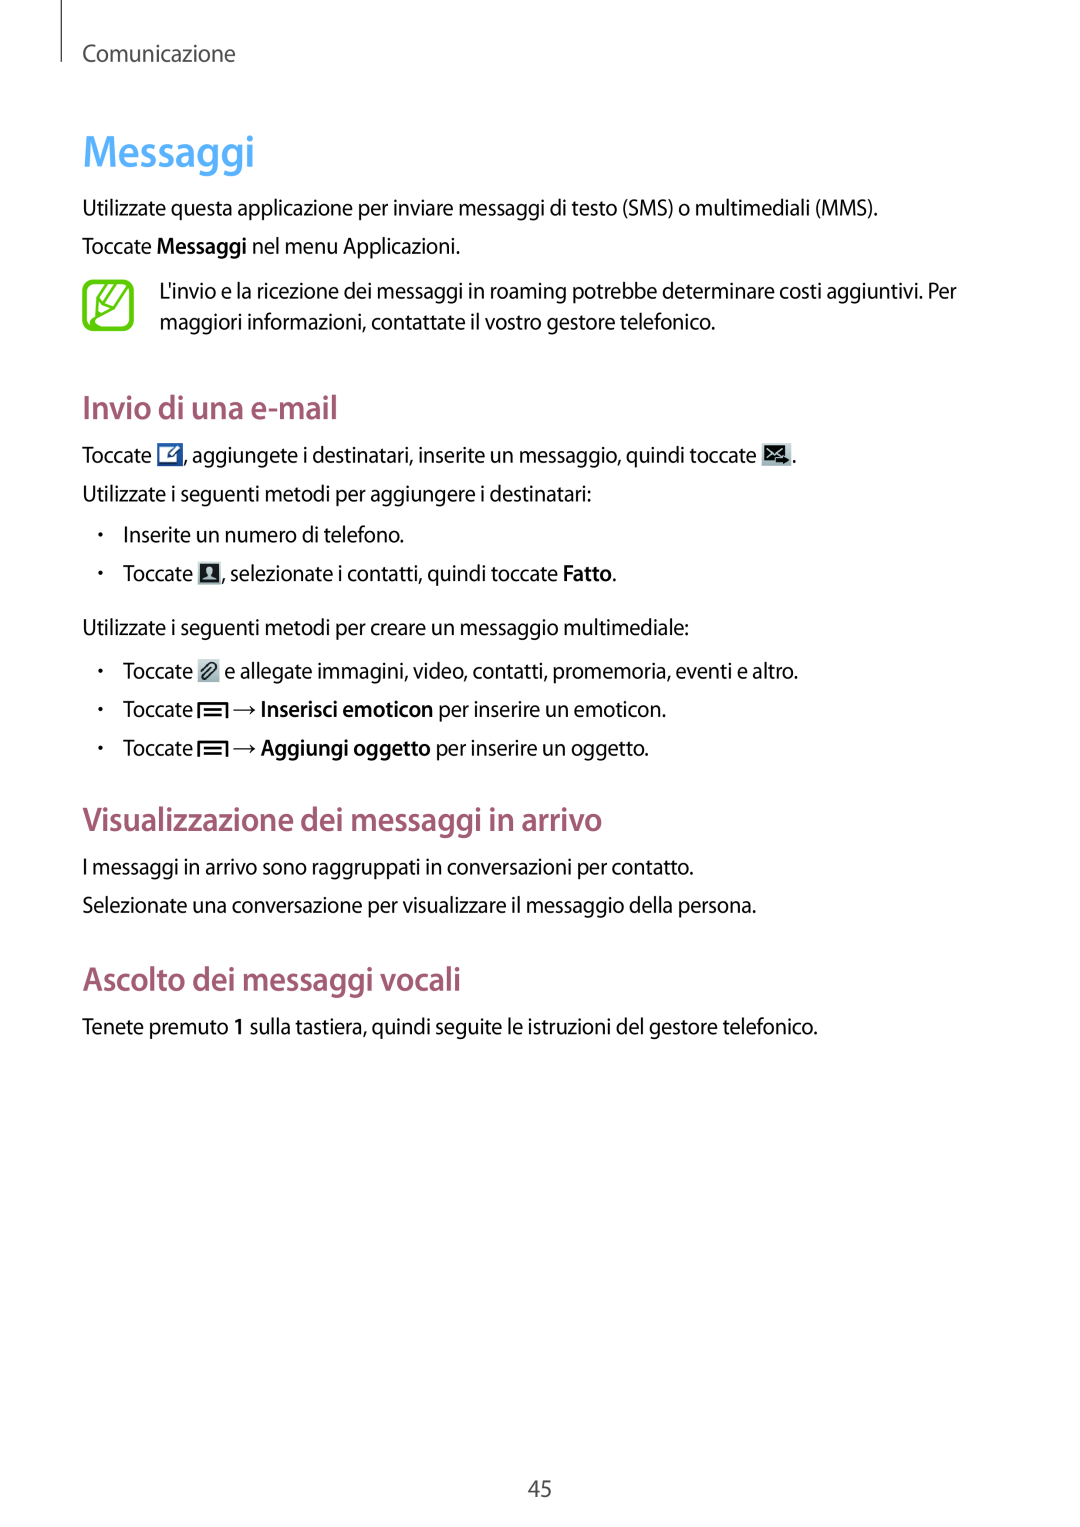 Samsung GT-S6810MBCVNN Messaggi, Invio di una e-mail, Visualizzazione dei messaggi in arrivo, Ascolto dei messaggi vocali 